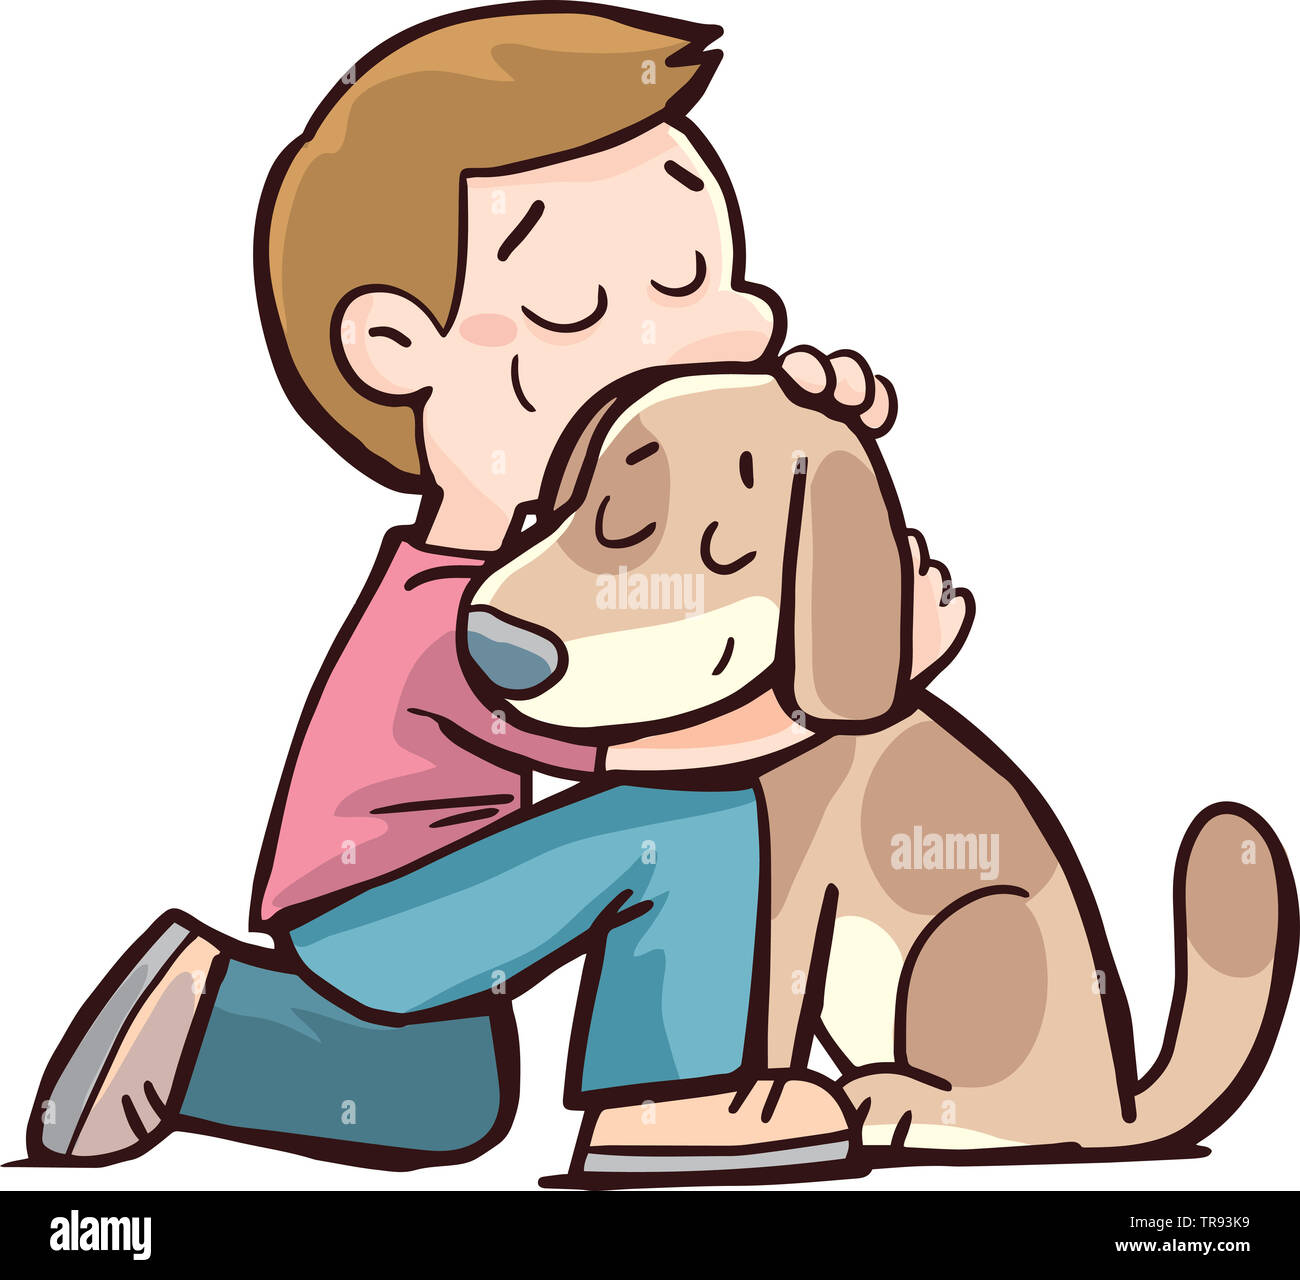 Мальчик в обнимку с собакой